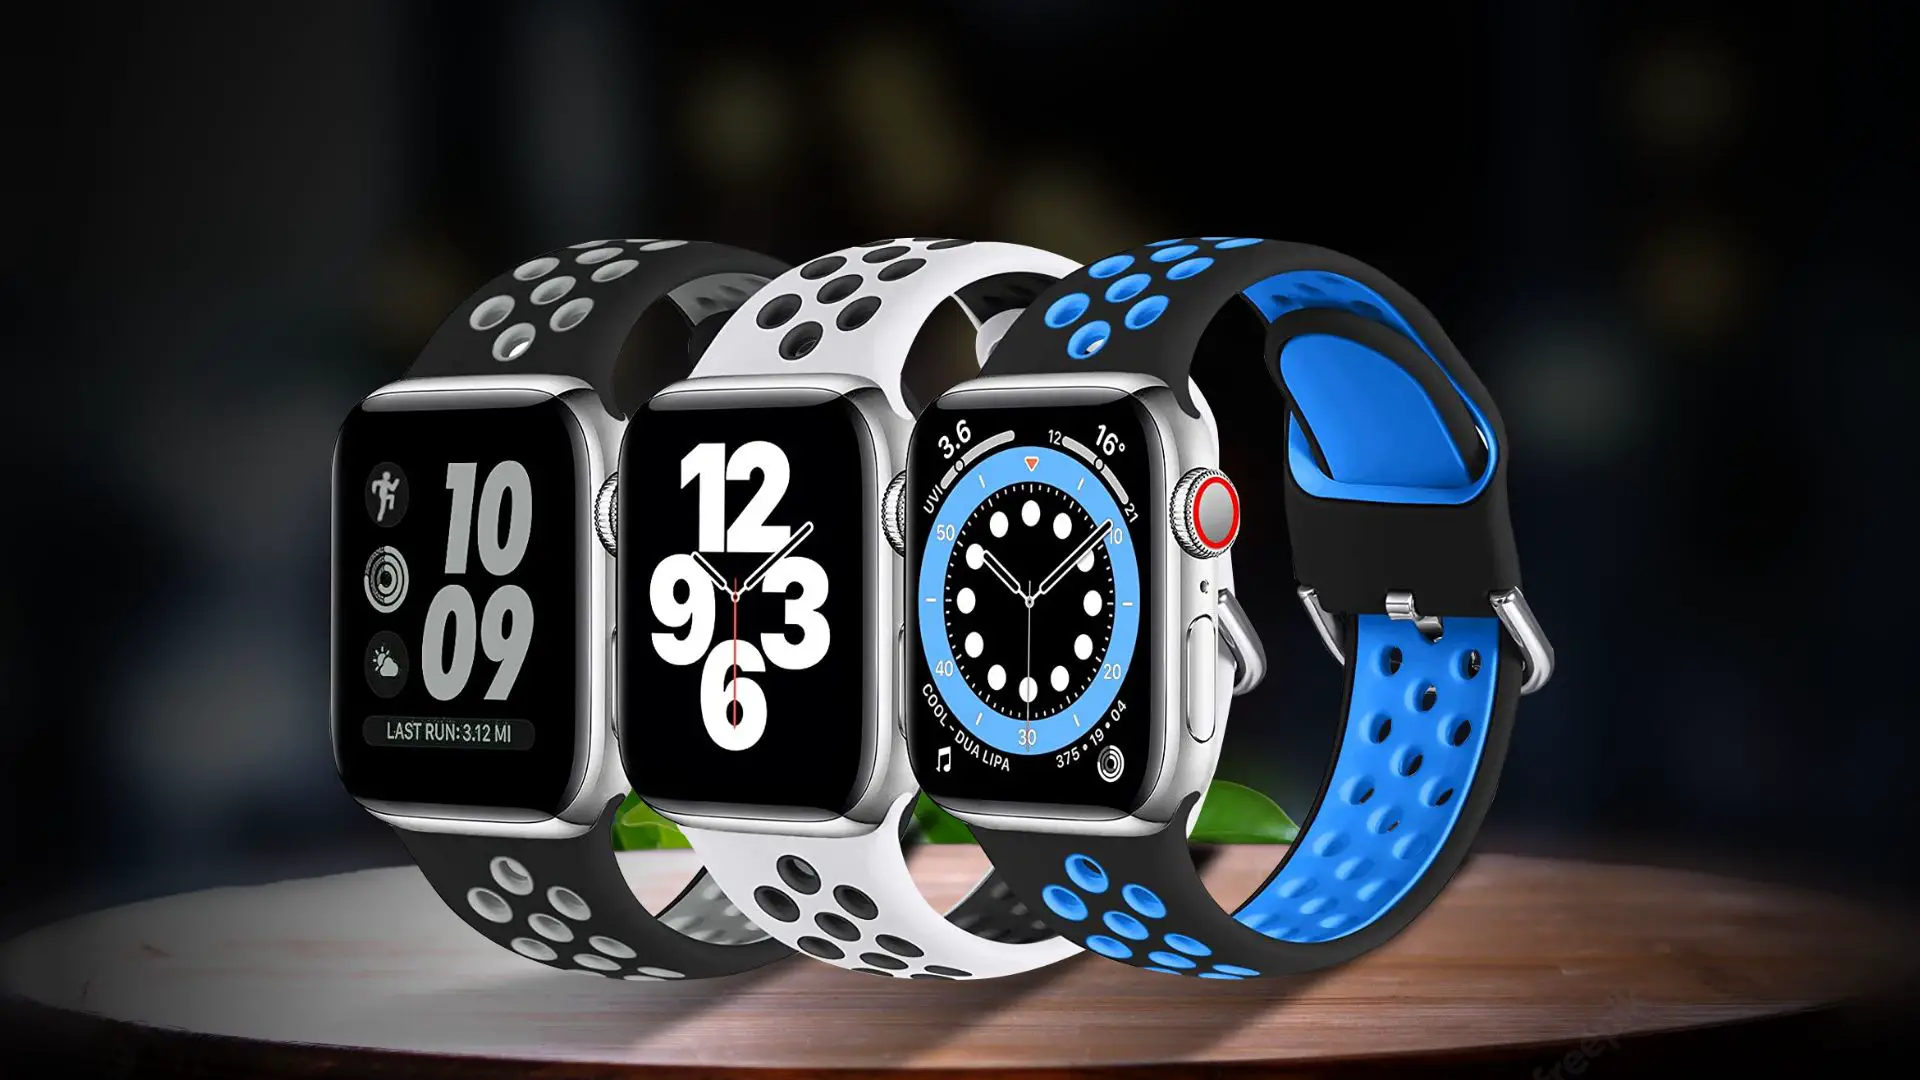 Lerobo 3 Pack Apple Watch Bands